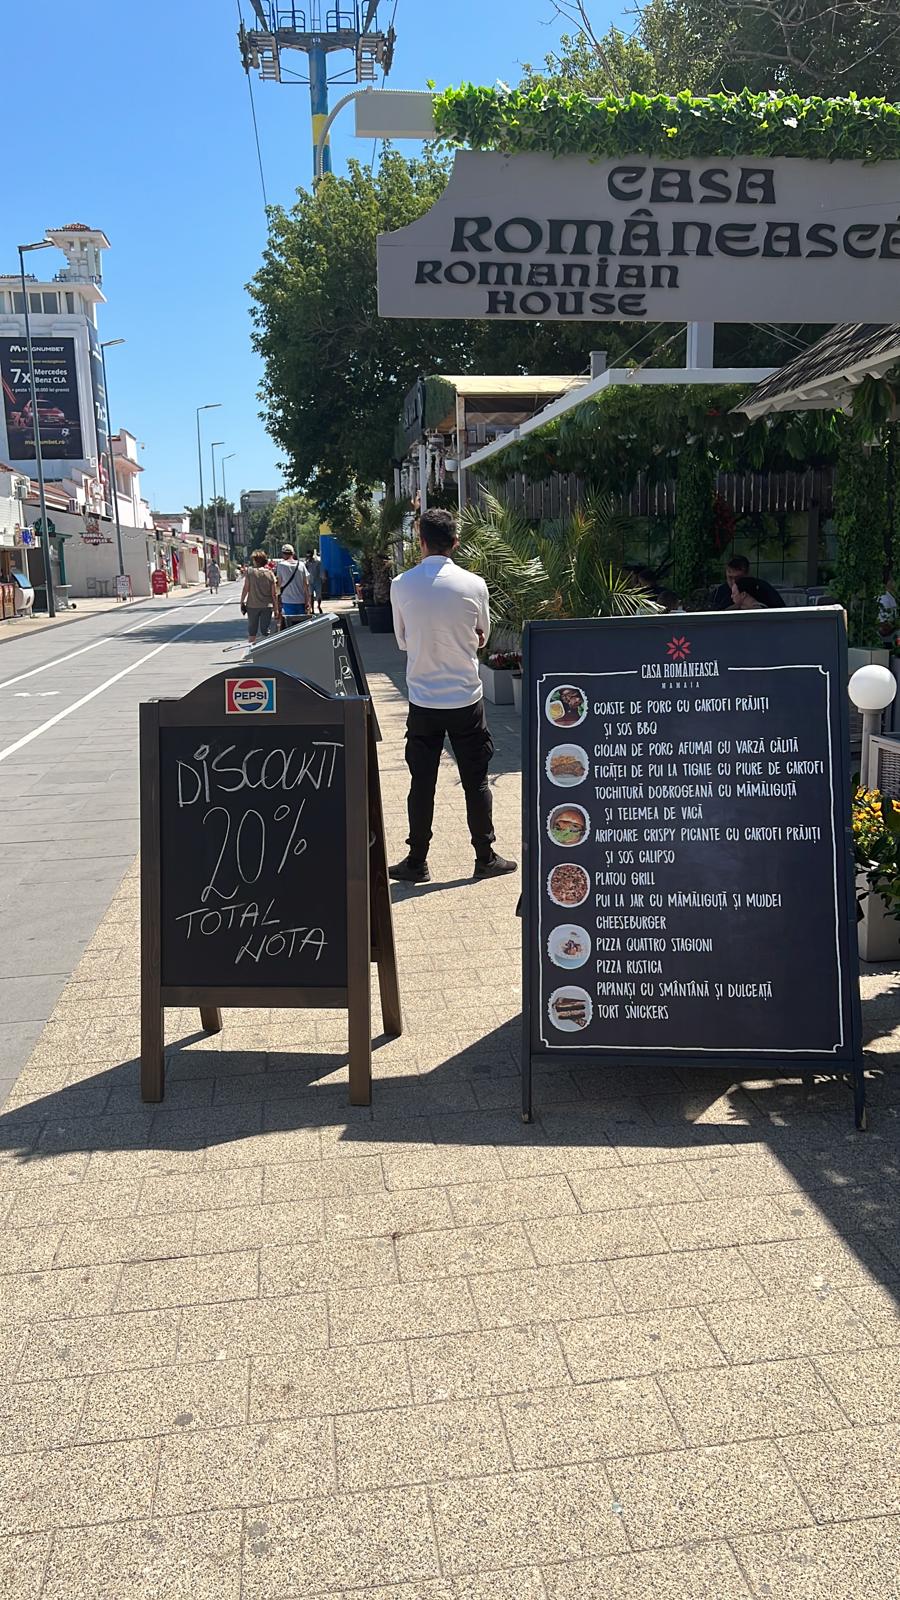 Restaurantele din Mamaia au fost nevoite sa ofere reduceri pentru a atrage putinii turisti care ajung in statiune